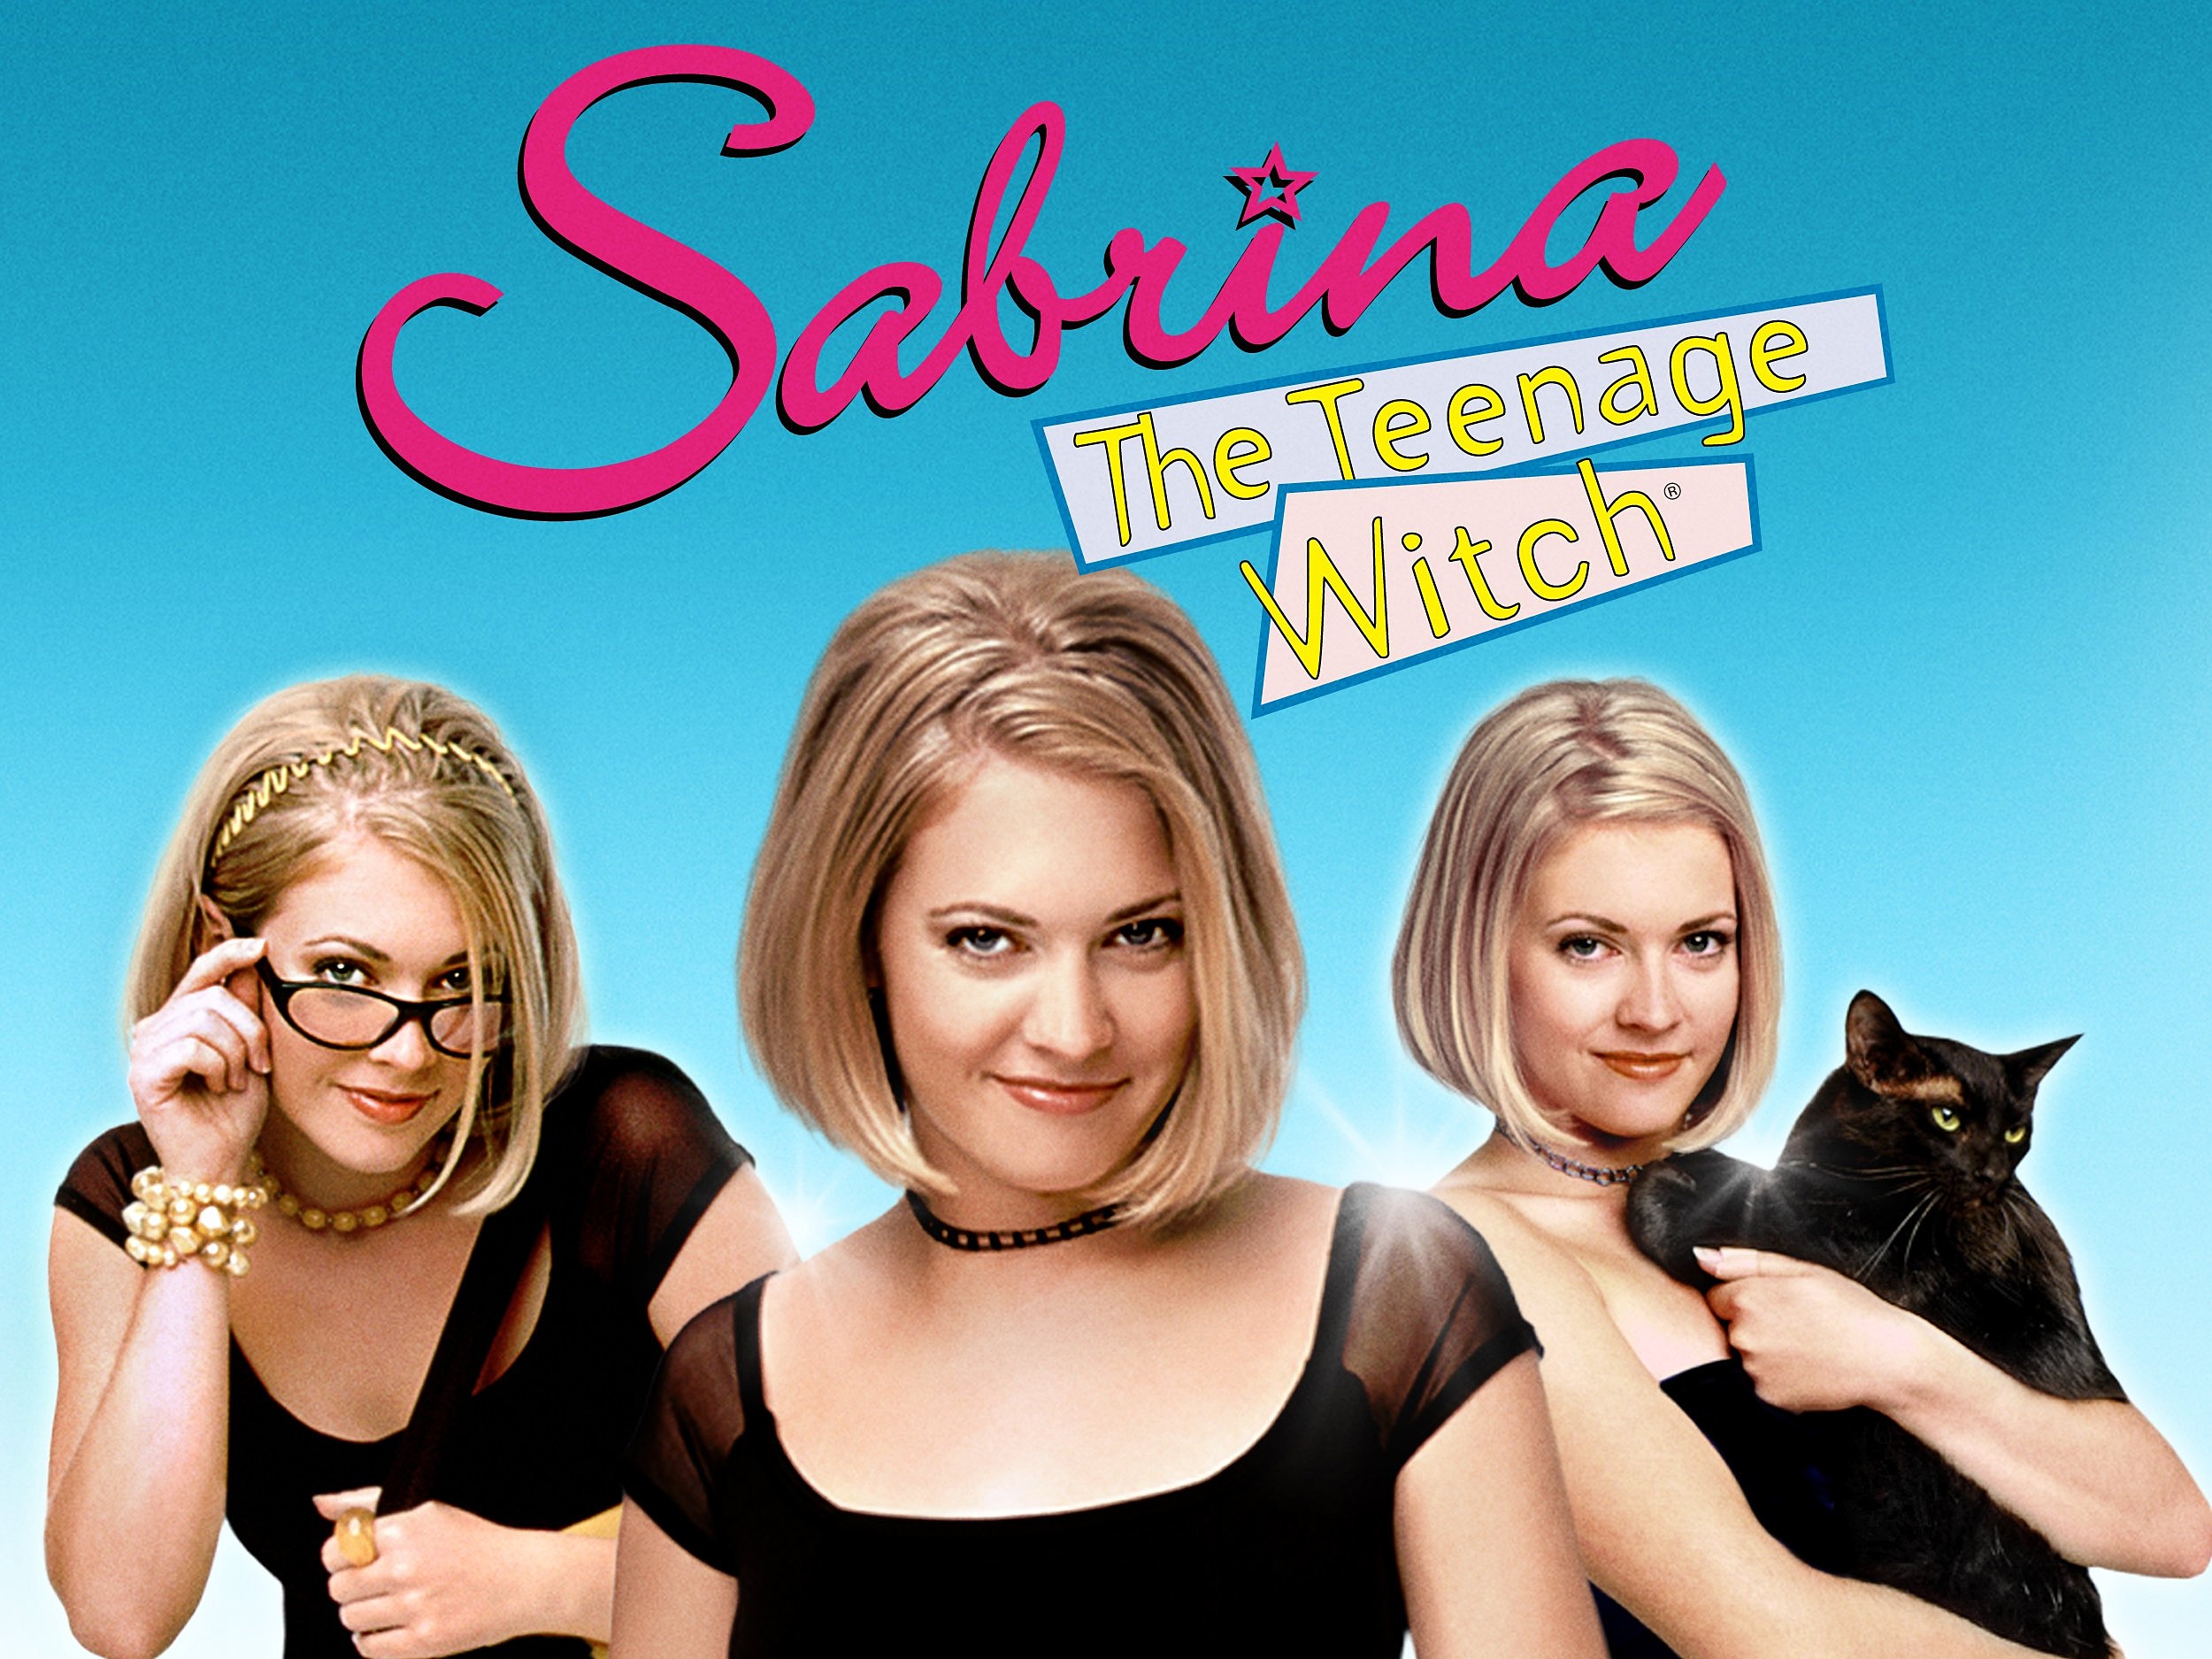 دانلود سریال Sabrina the Teenage Witch